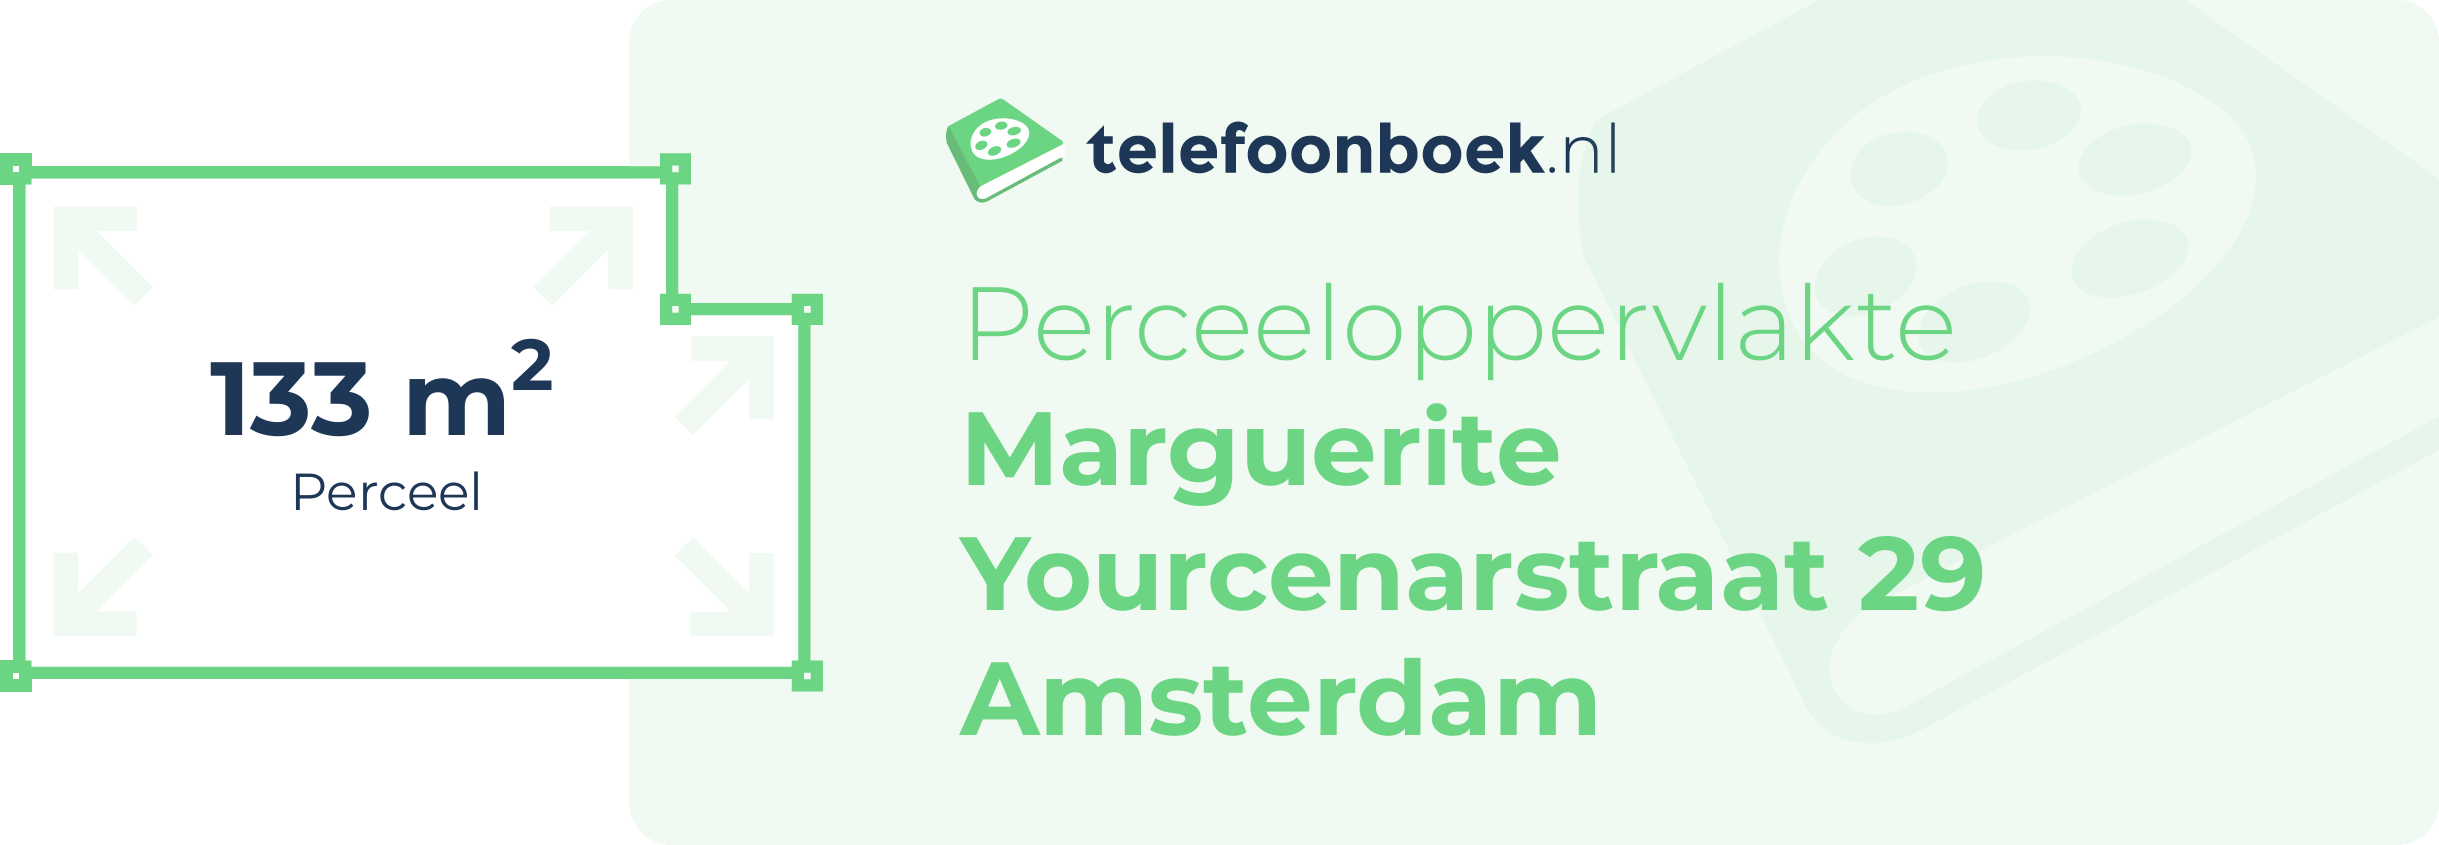 Perceeloppervlakte Marguerite Yourcenarstraat 29 Amsterdam